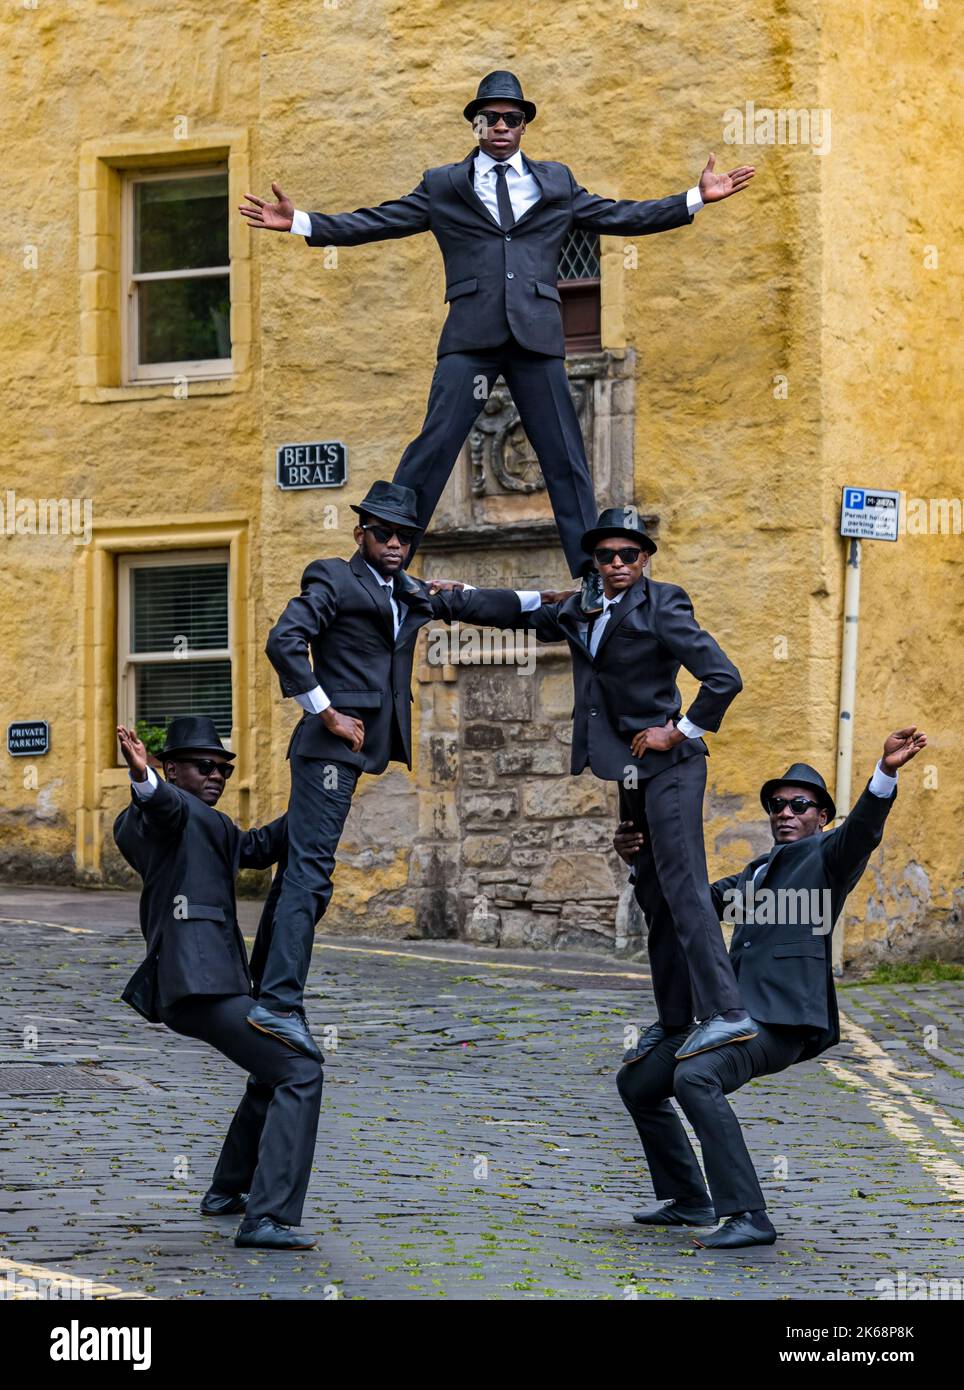 Le groupe acrobatique Black Blues Brothers se présente dans Dean Village, créant une pyramide humaine, à Édimbourg, en Écosse, au Royaume-Uni Banque D'Images